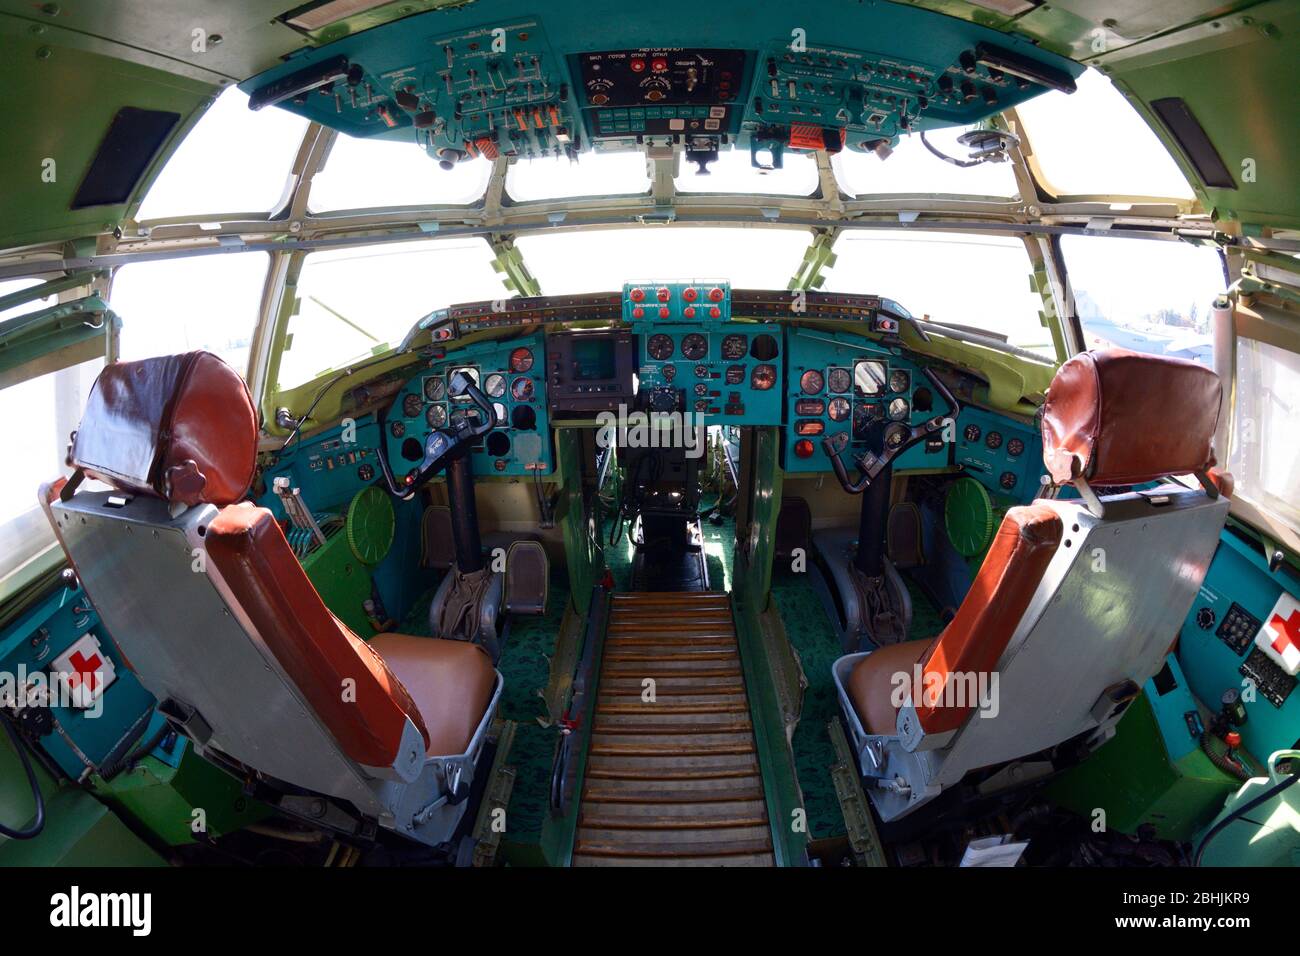 Das Cockpit von Made in Ukraine Transportflugzeug, Lenkrad, Dashboards, Sitze für Piloten Stockfoto